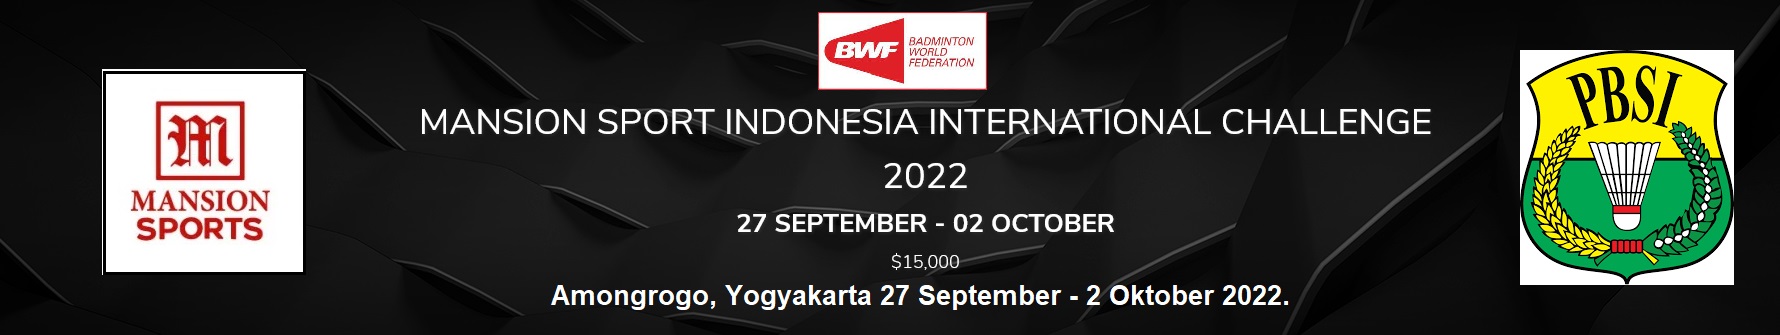 #MANSION SPORT Indonesia International Challenge 2022 27 September - 02 October 